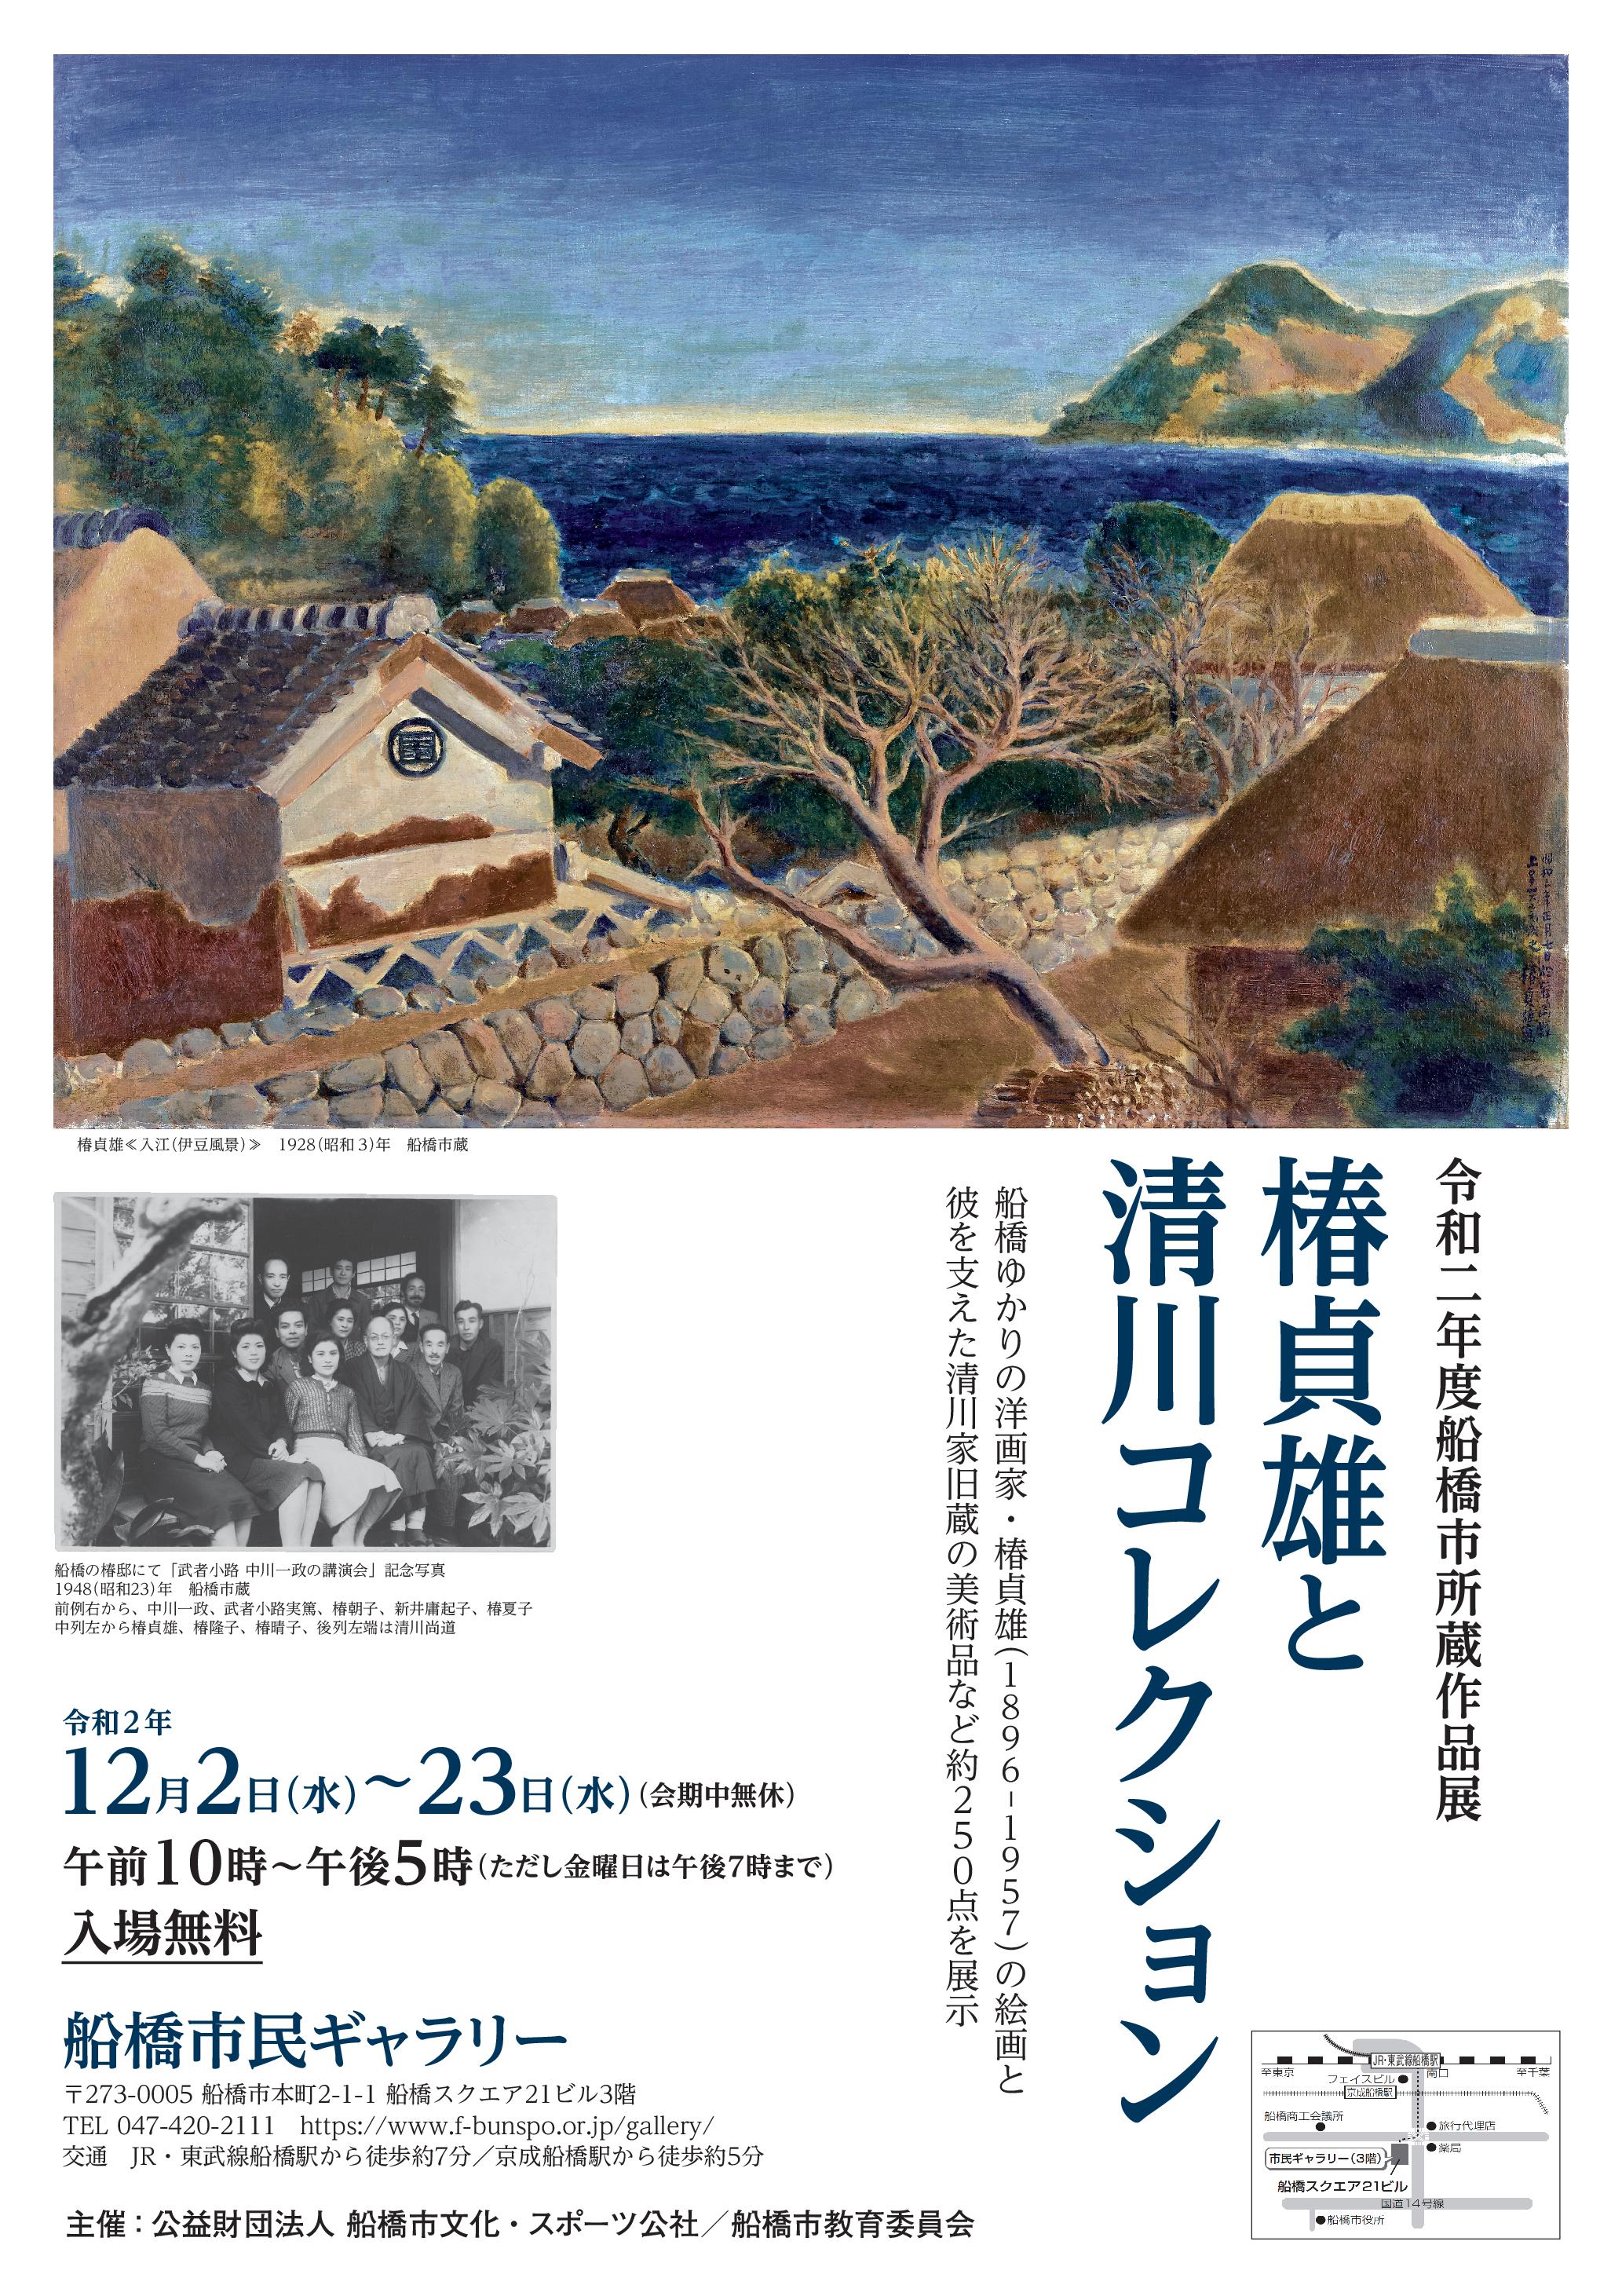 令和2年度船橋市所蔵作品展「椿貞雄と清川コレクション」チラシ表紙